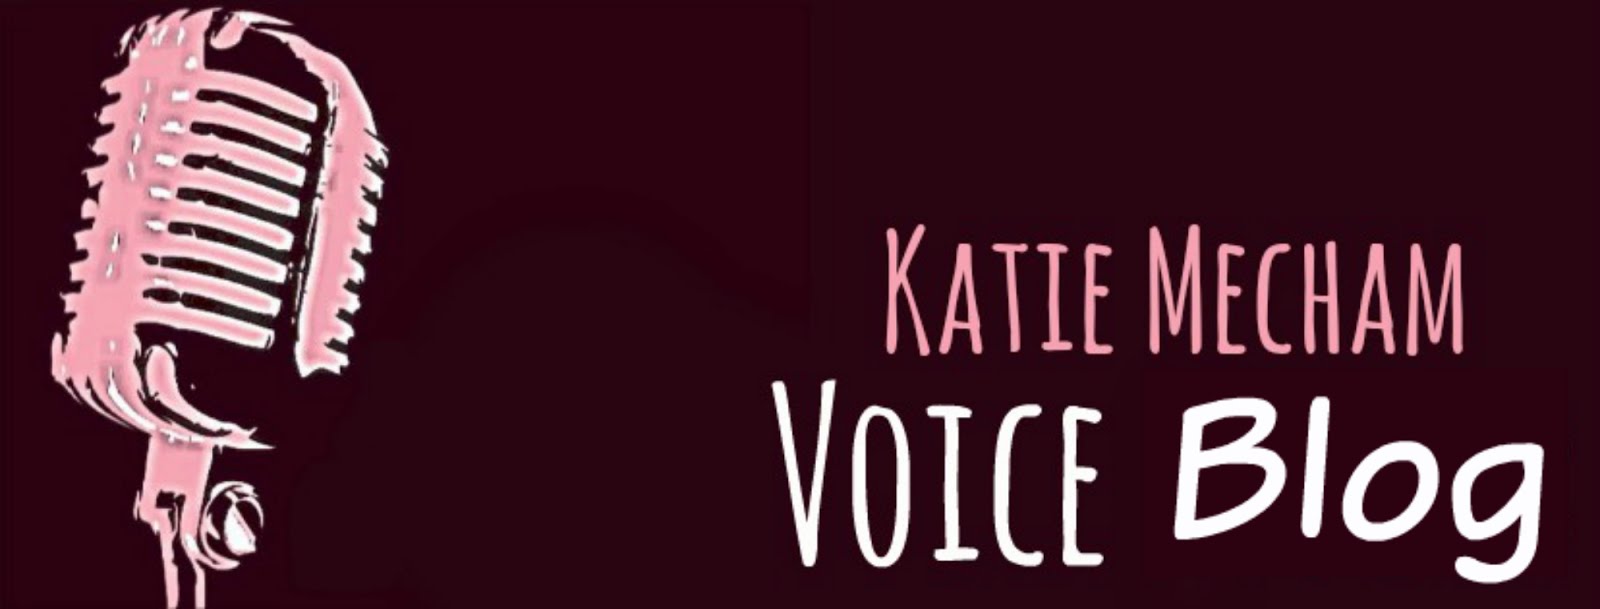 Katie Mecham Voice Blog